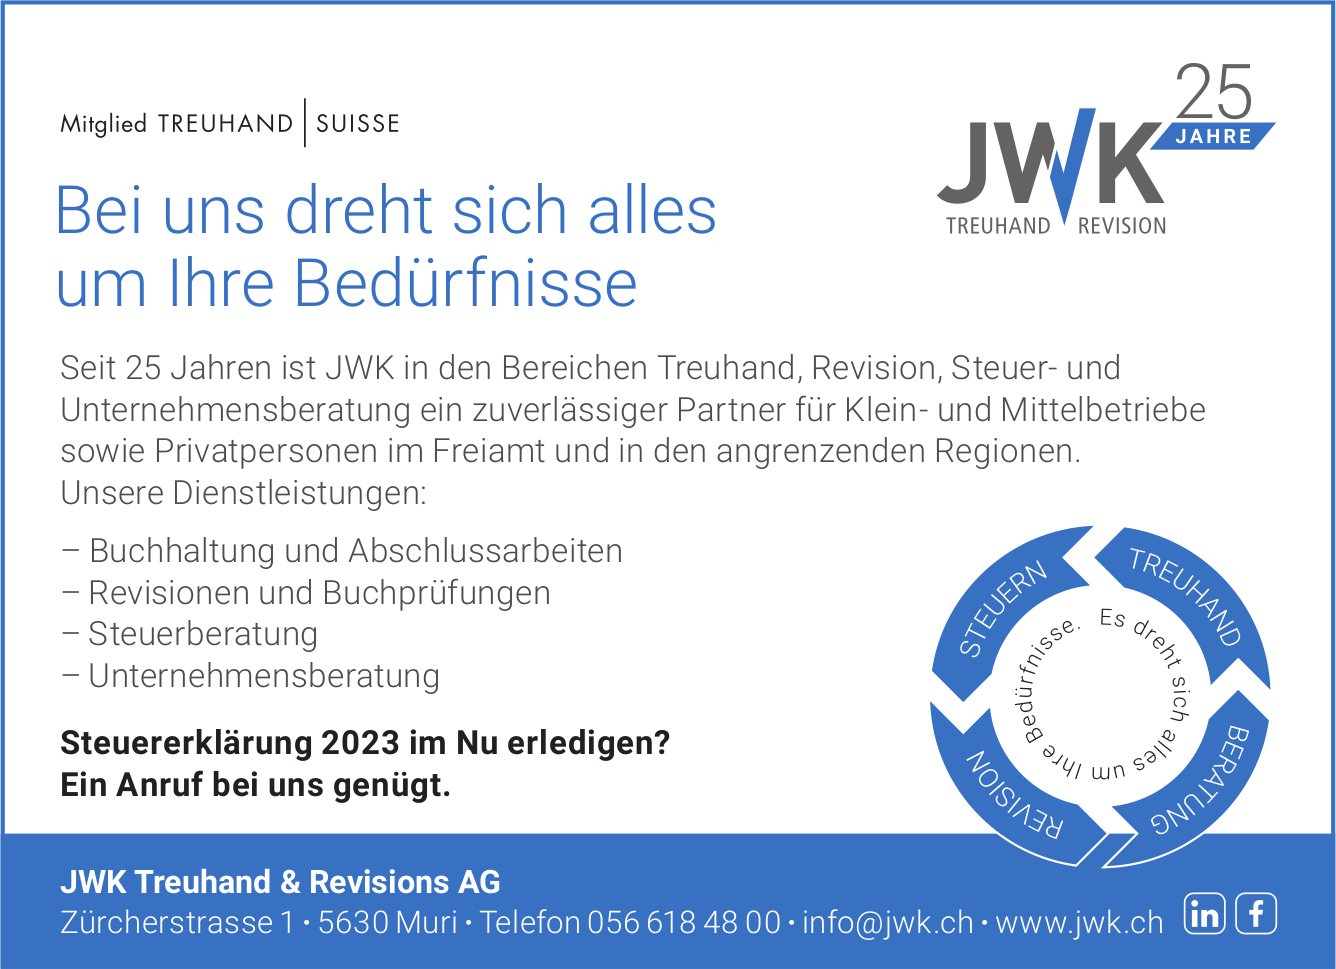 JWK Treuhand & Revisions AG, Muri - Steuererklärung